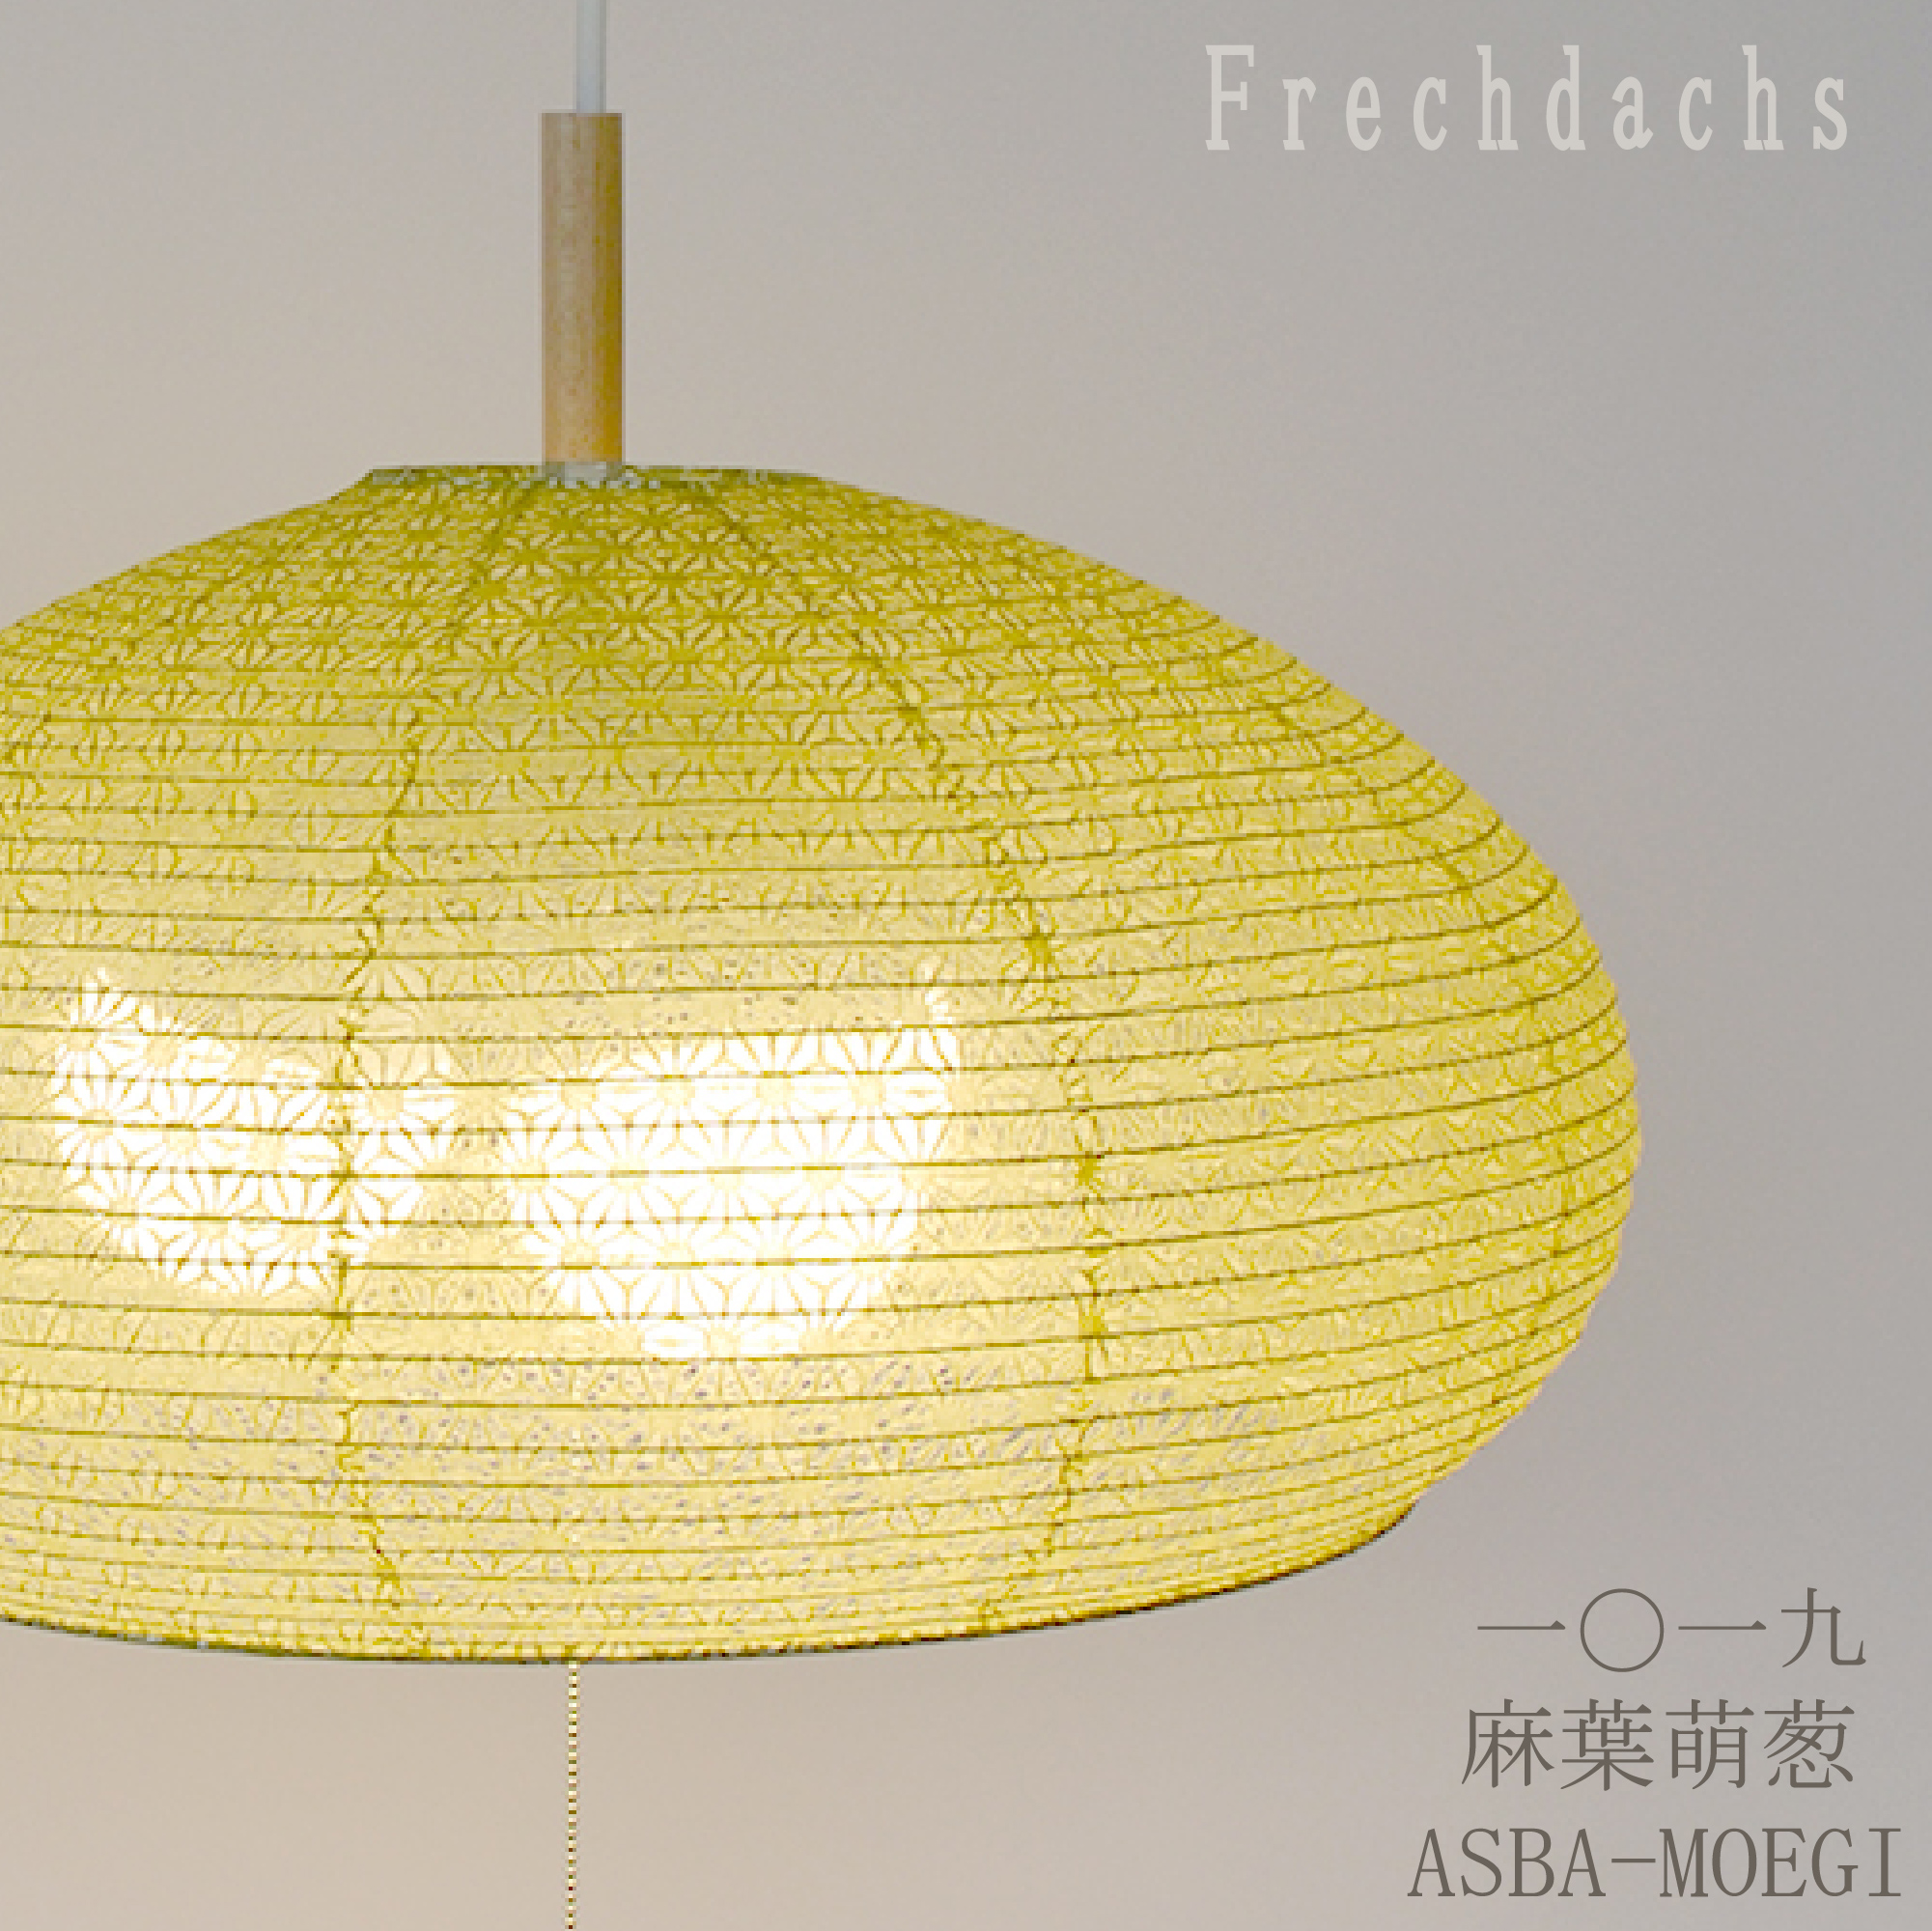 【楽天市場】白熱電球プレゼント 照明器具 ペンダントライト 和風 